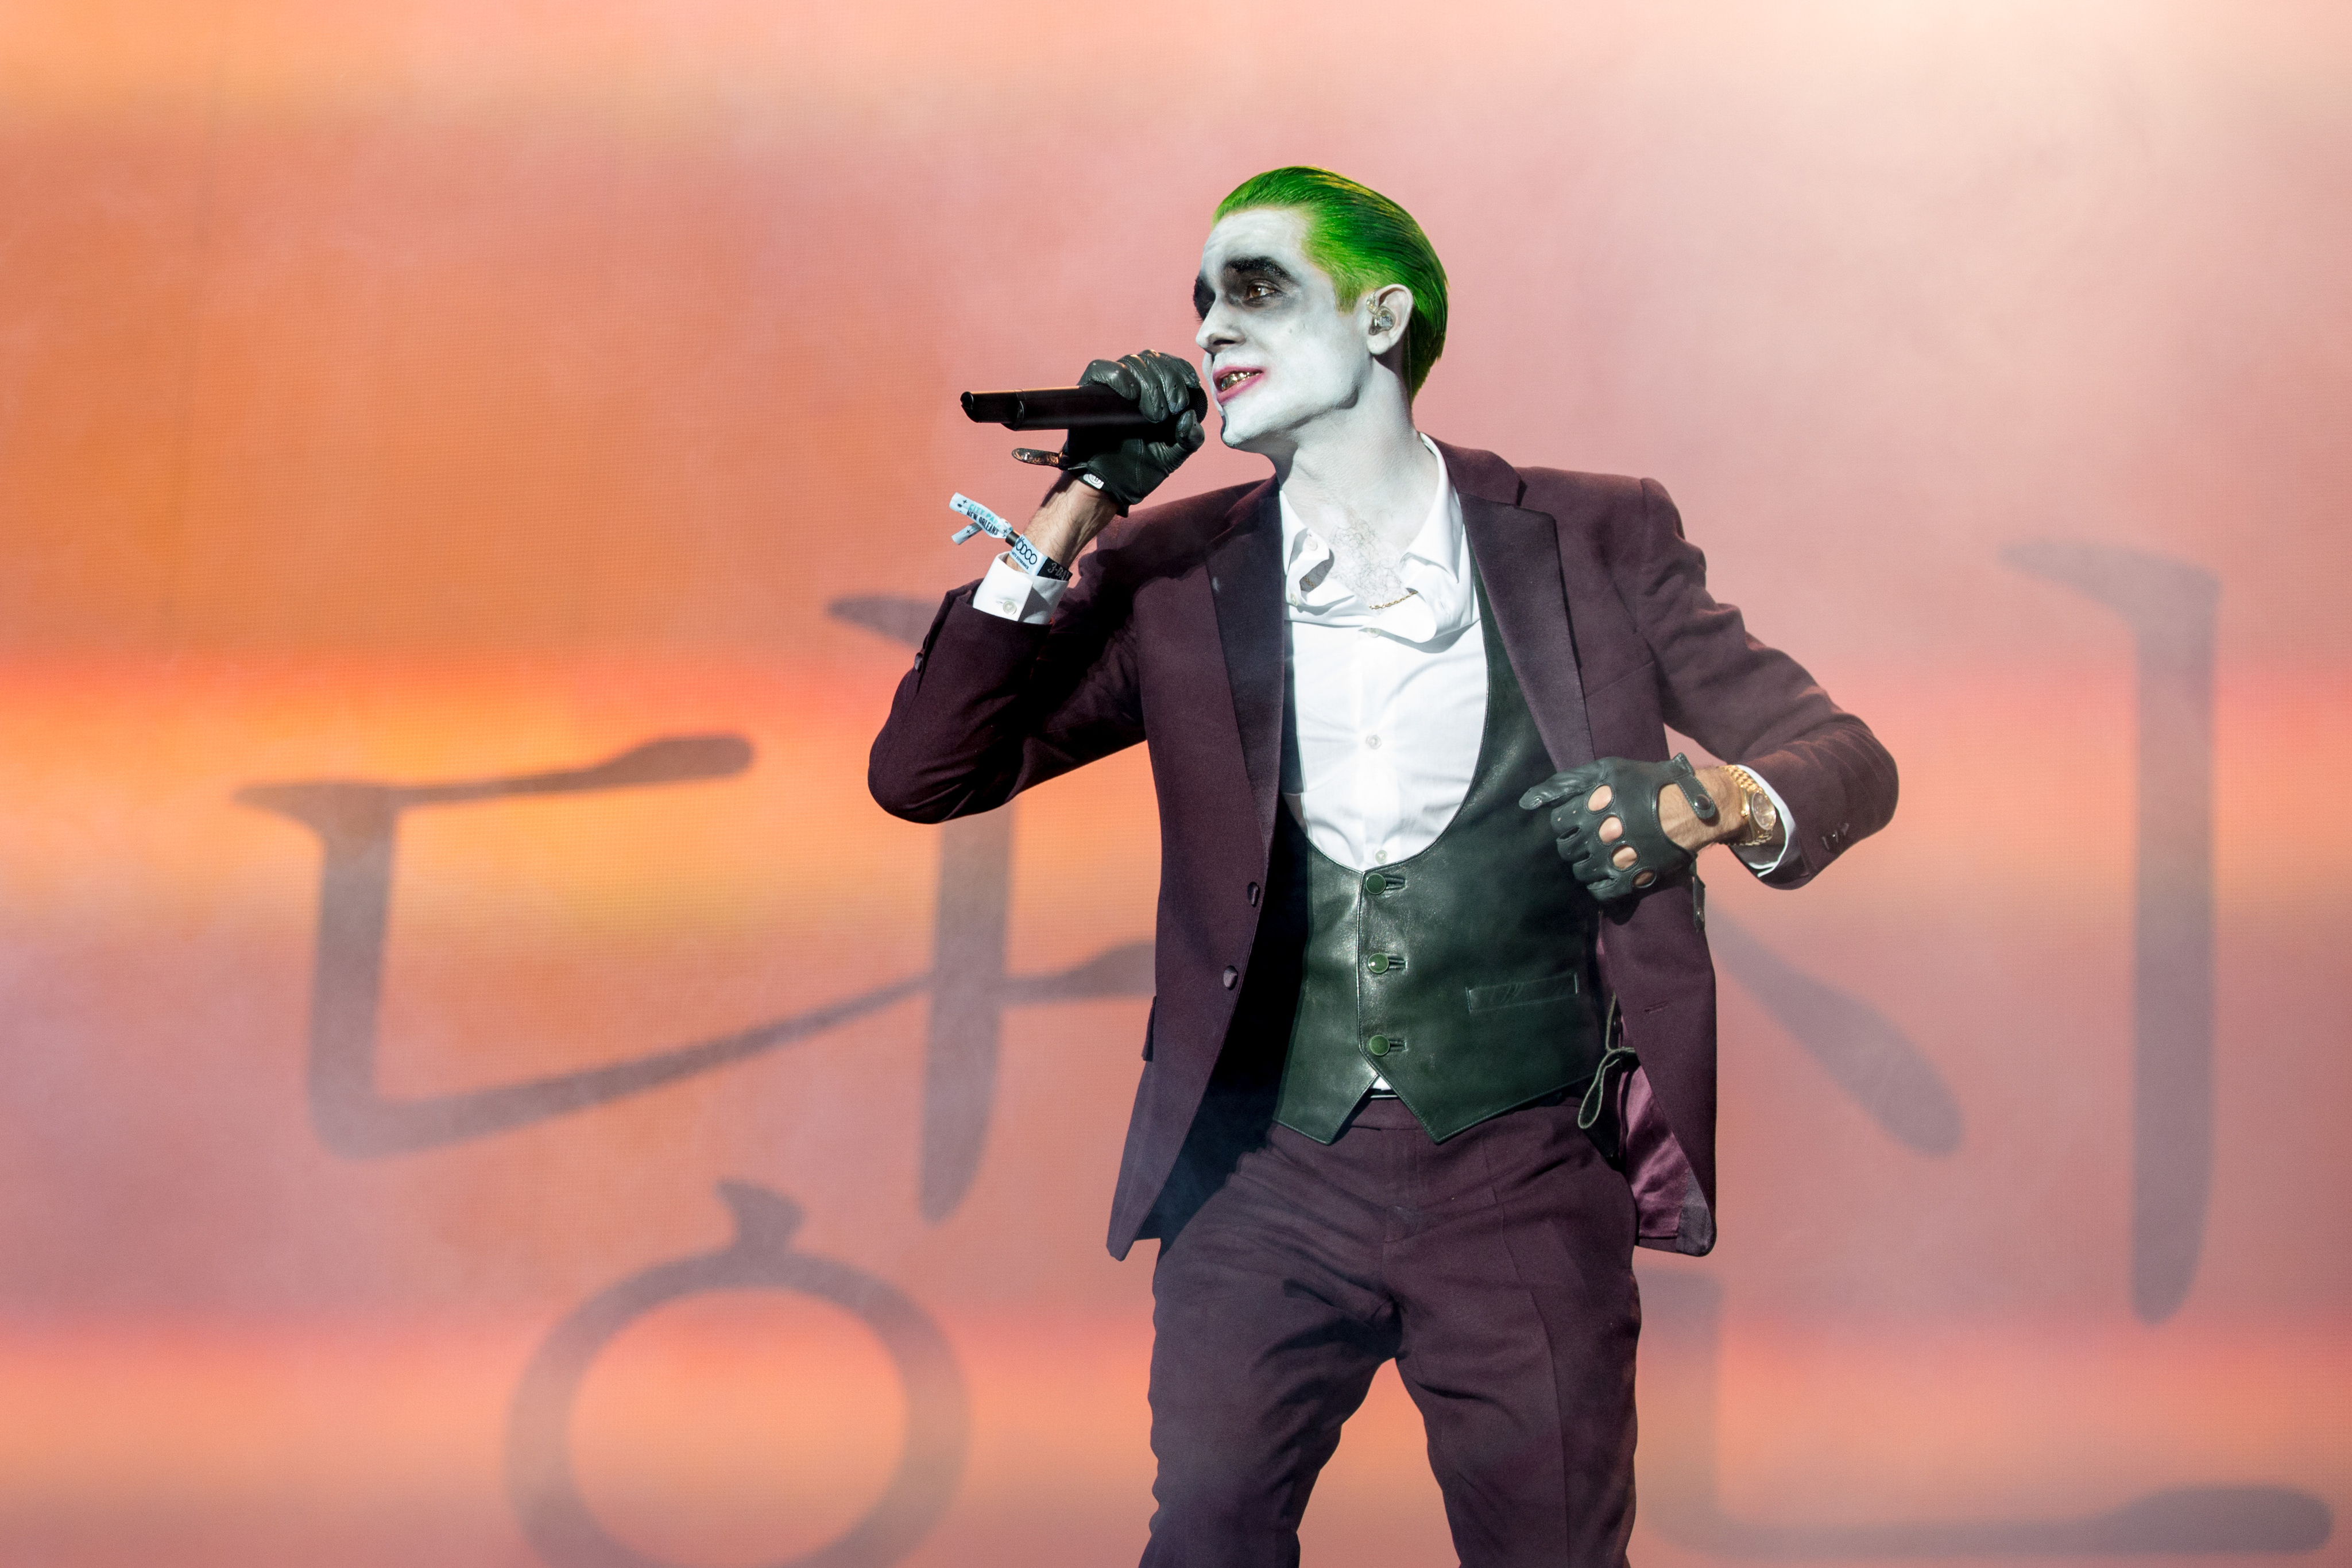 G Eazy as The Joker